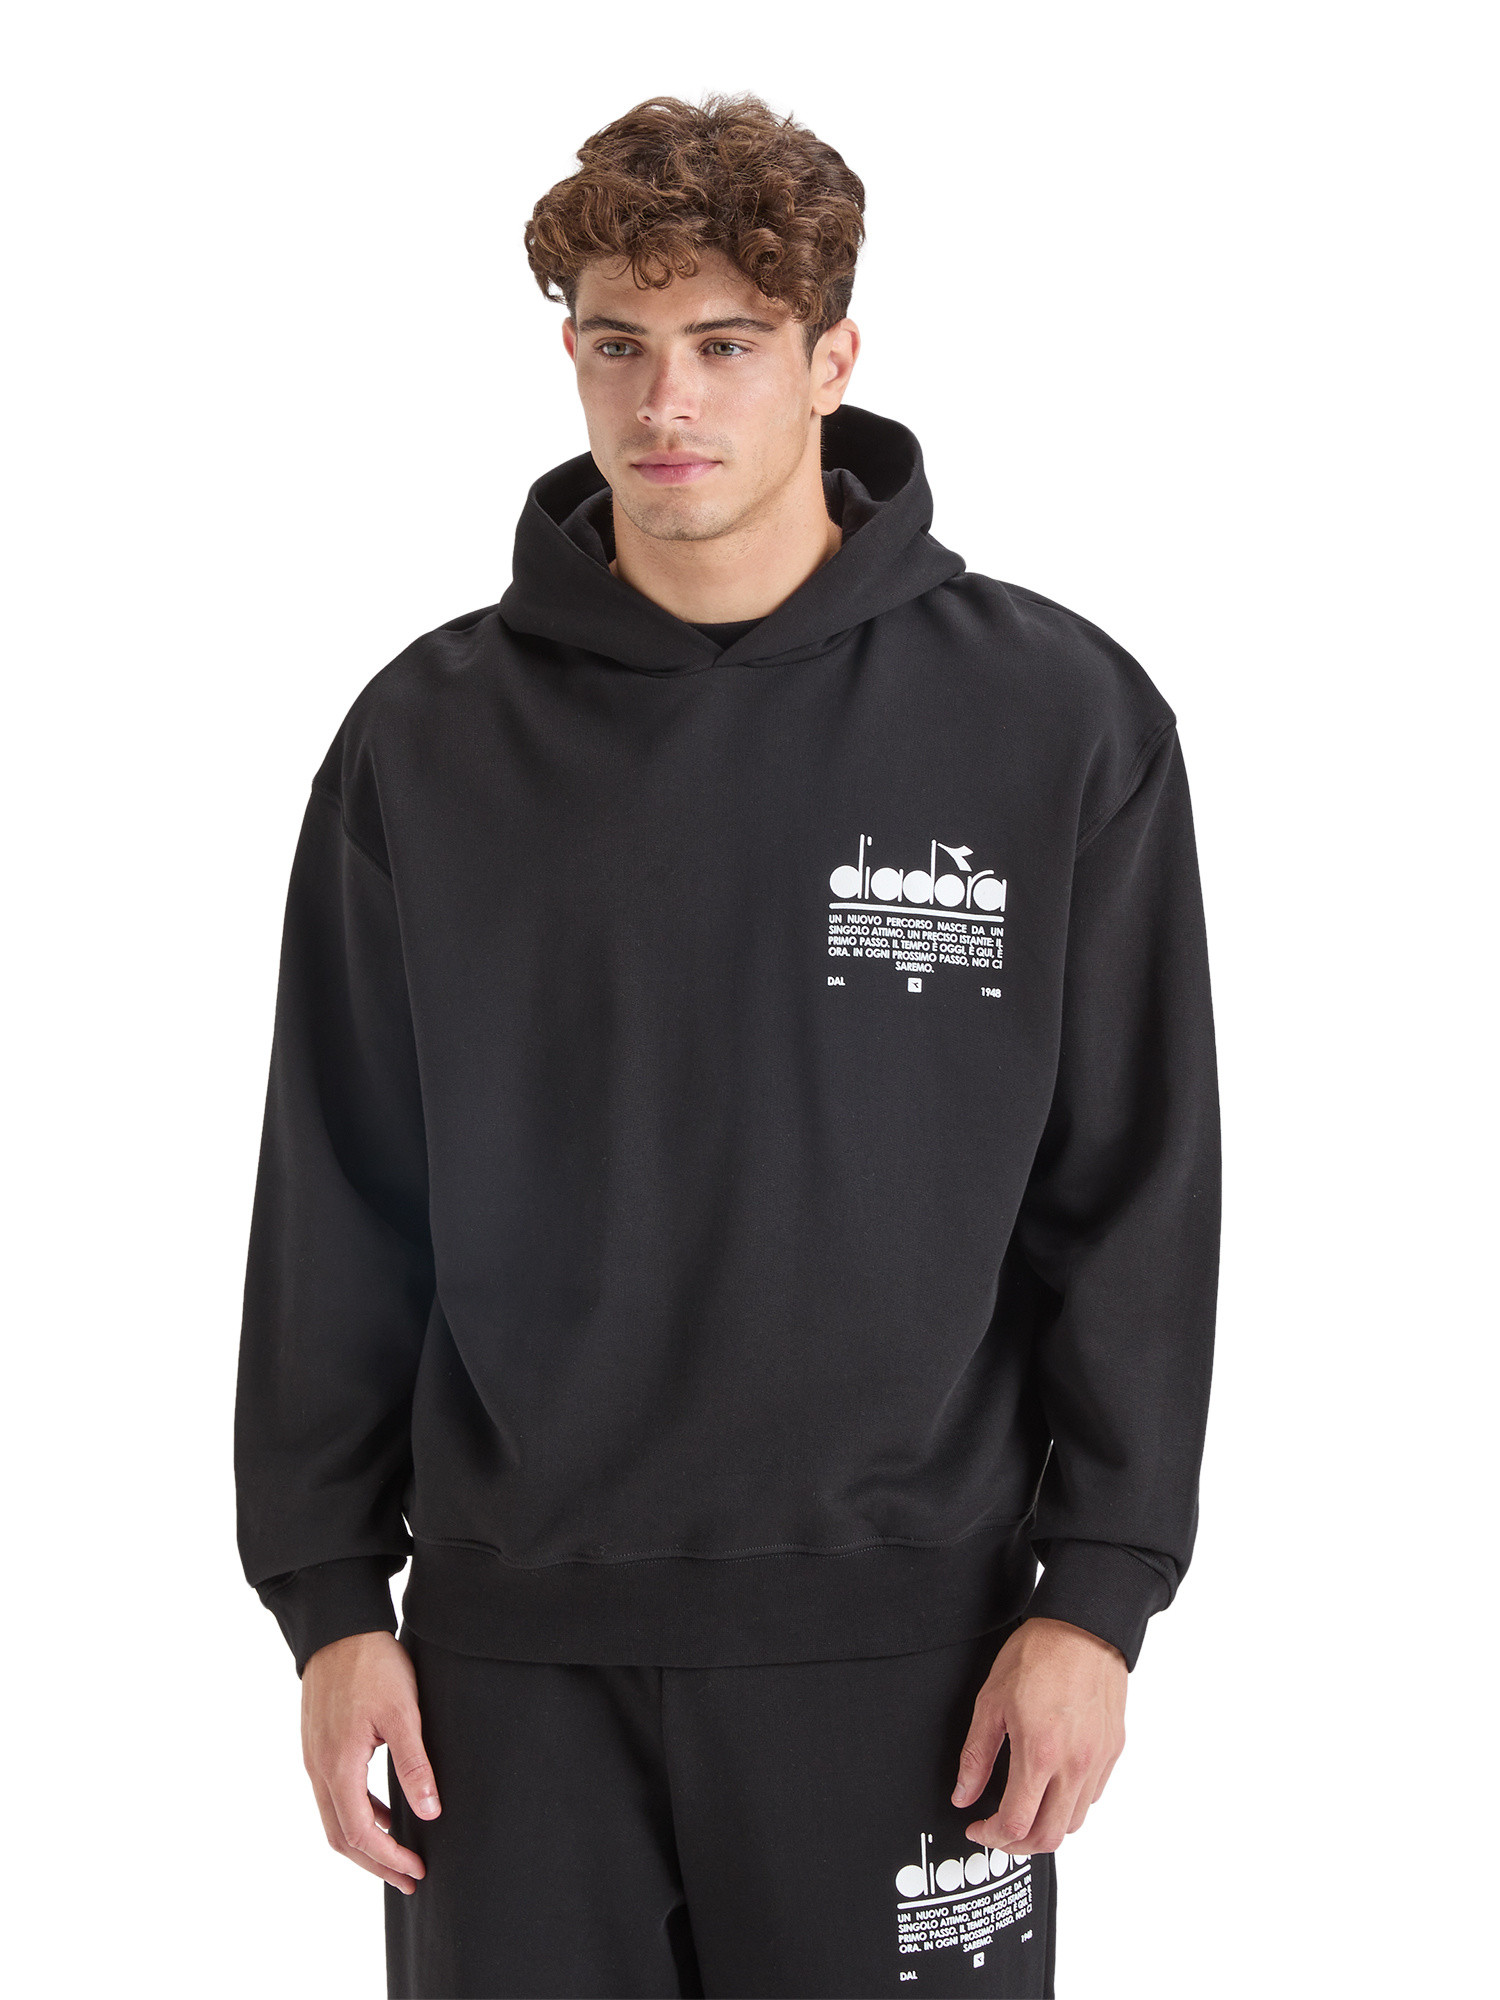 Diadora - Manifesto cotton hoodie, Black, large image number 4